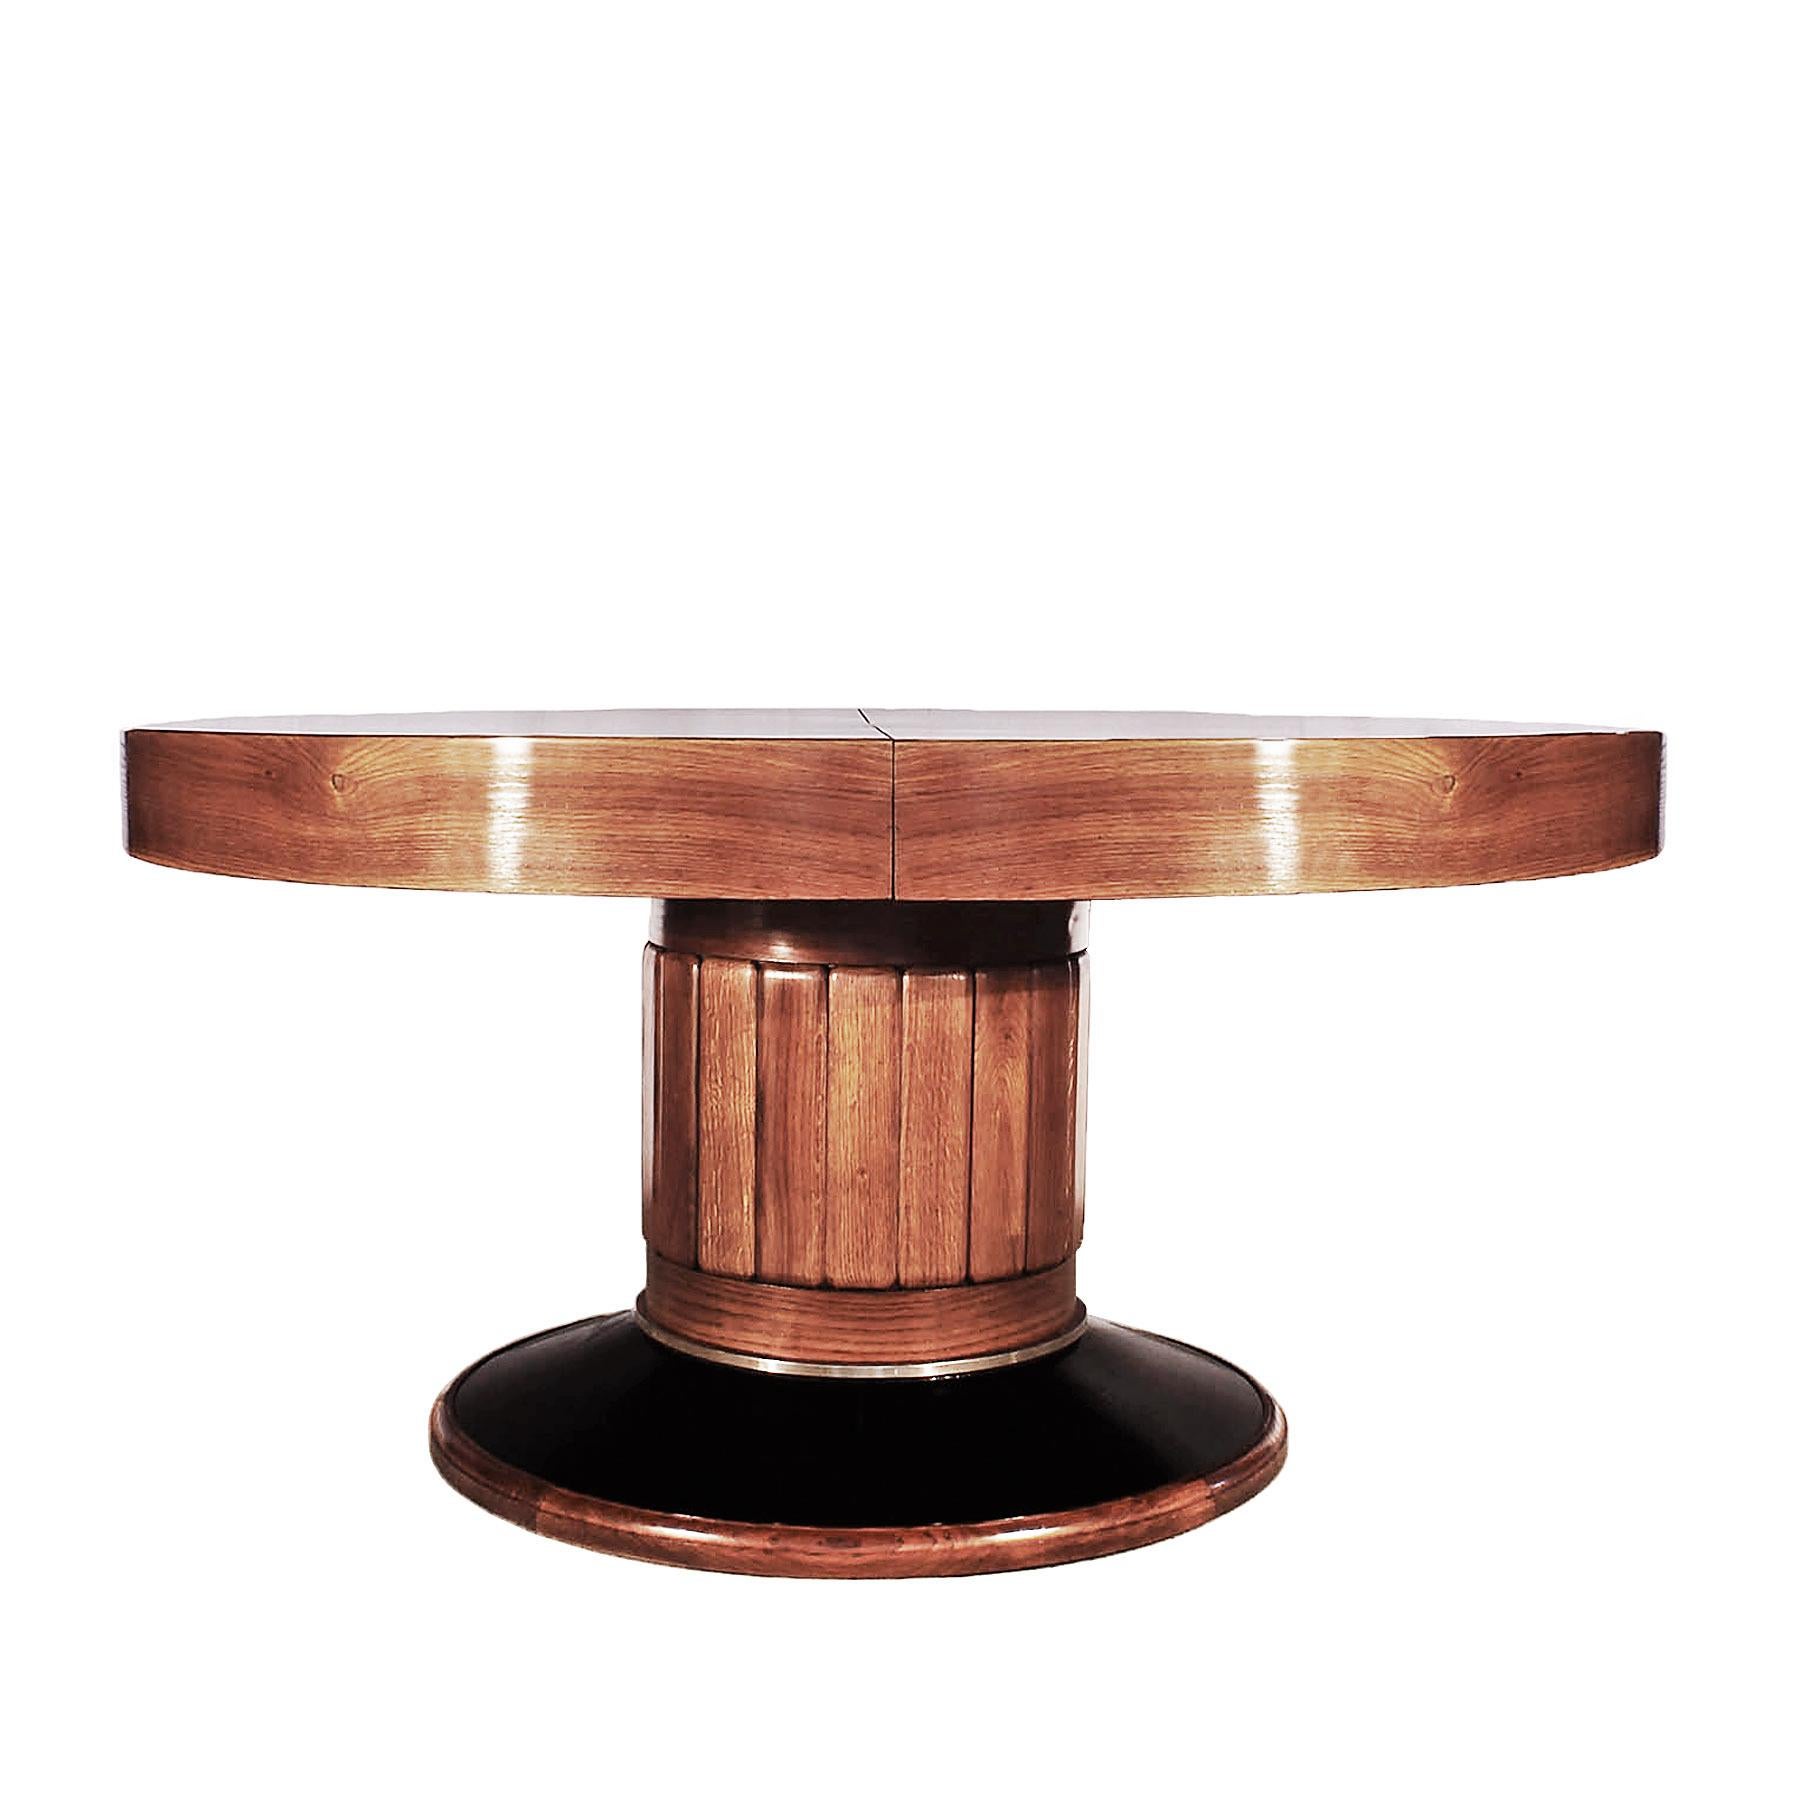 Table ronde Bigli Art Deco, en chêne massif avec marqueterie de placage de chêne, pied en chêne mouluré avec une base en placage de chêne teinté noir avec un anneau en laiton nickelé, poli à la française. Possibilité de réaliser des feuilles jusqu'à